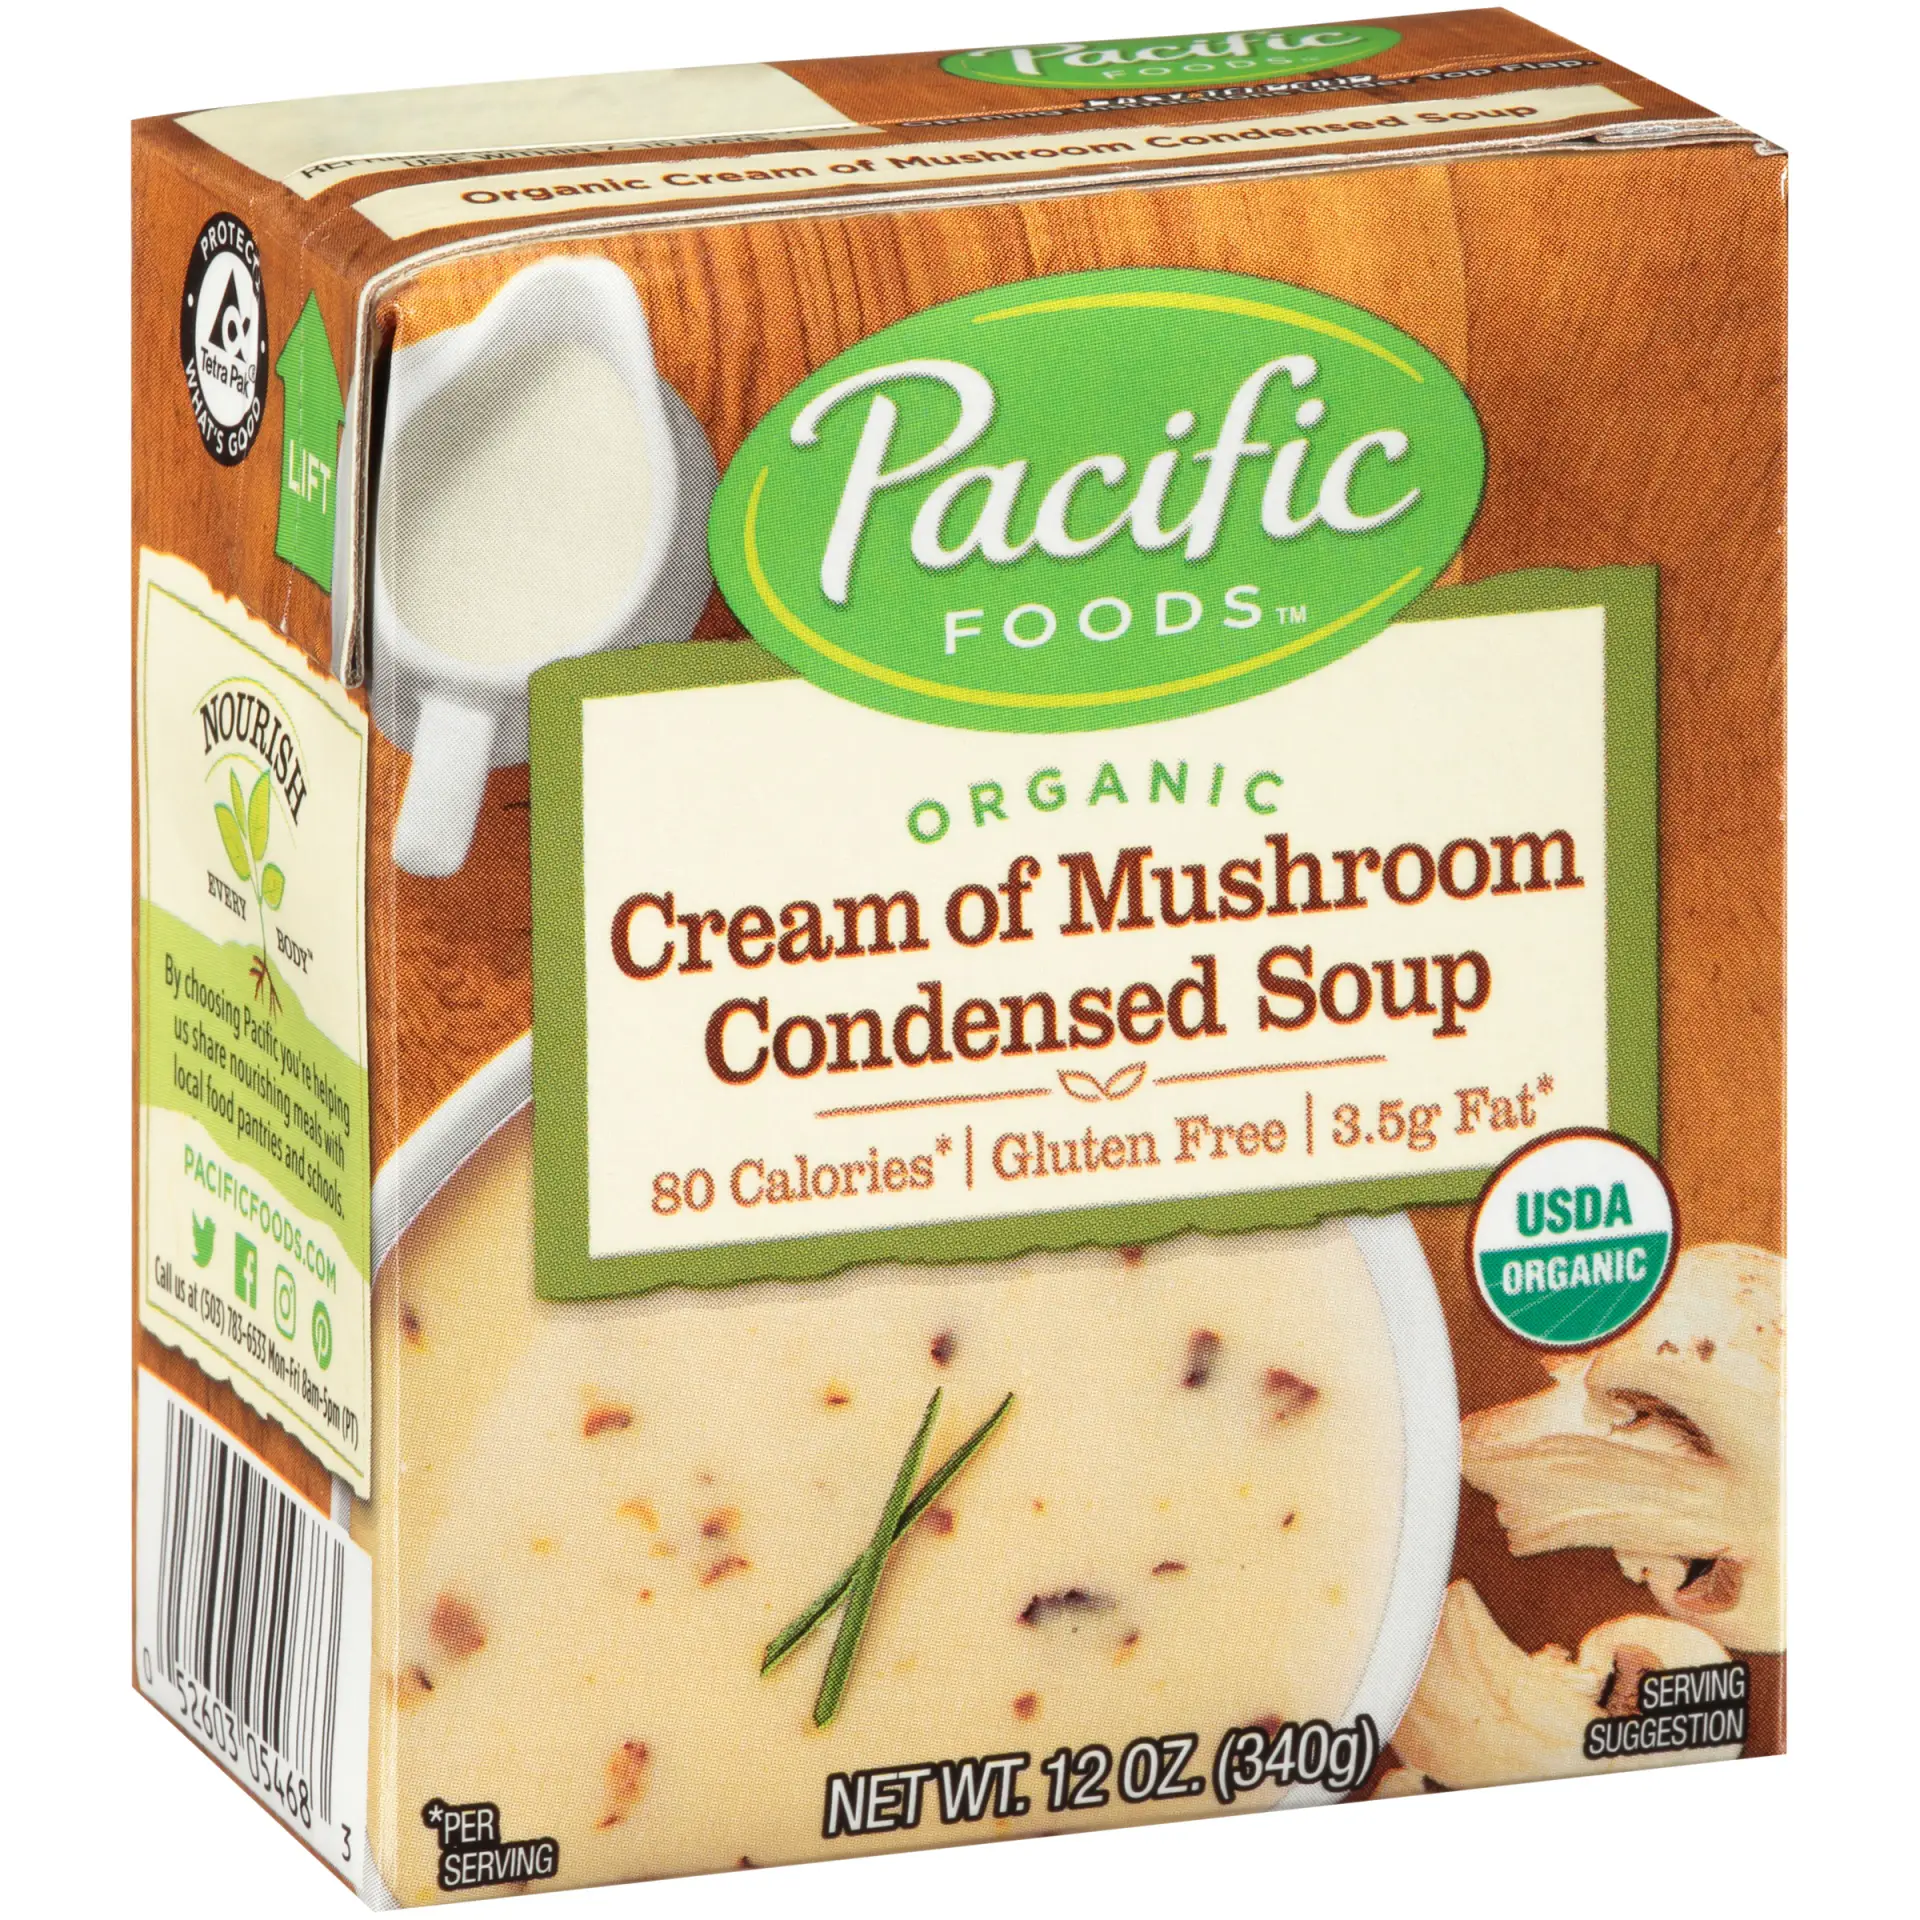 Pacific Foods Cream of Mushroom Condensed Soup 12 oz